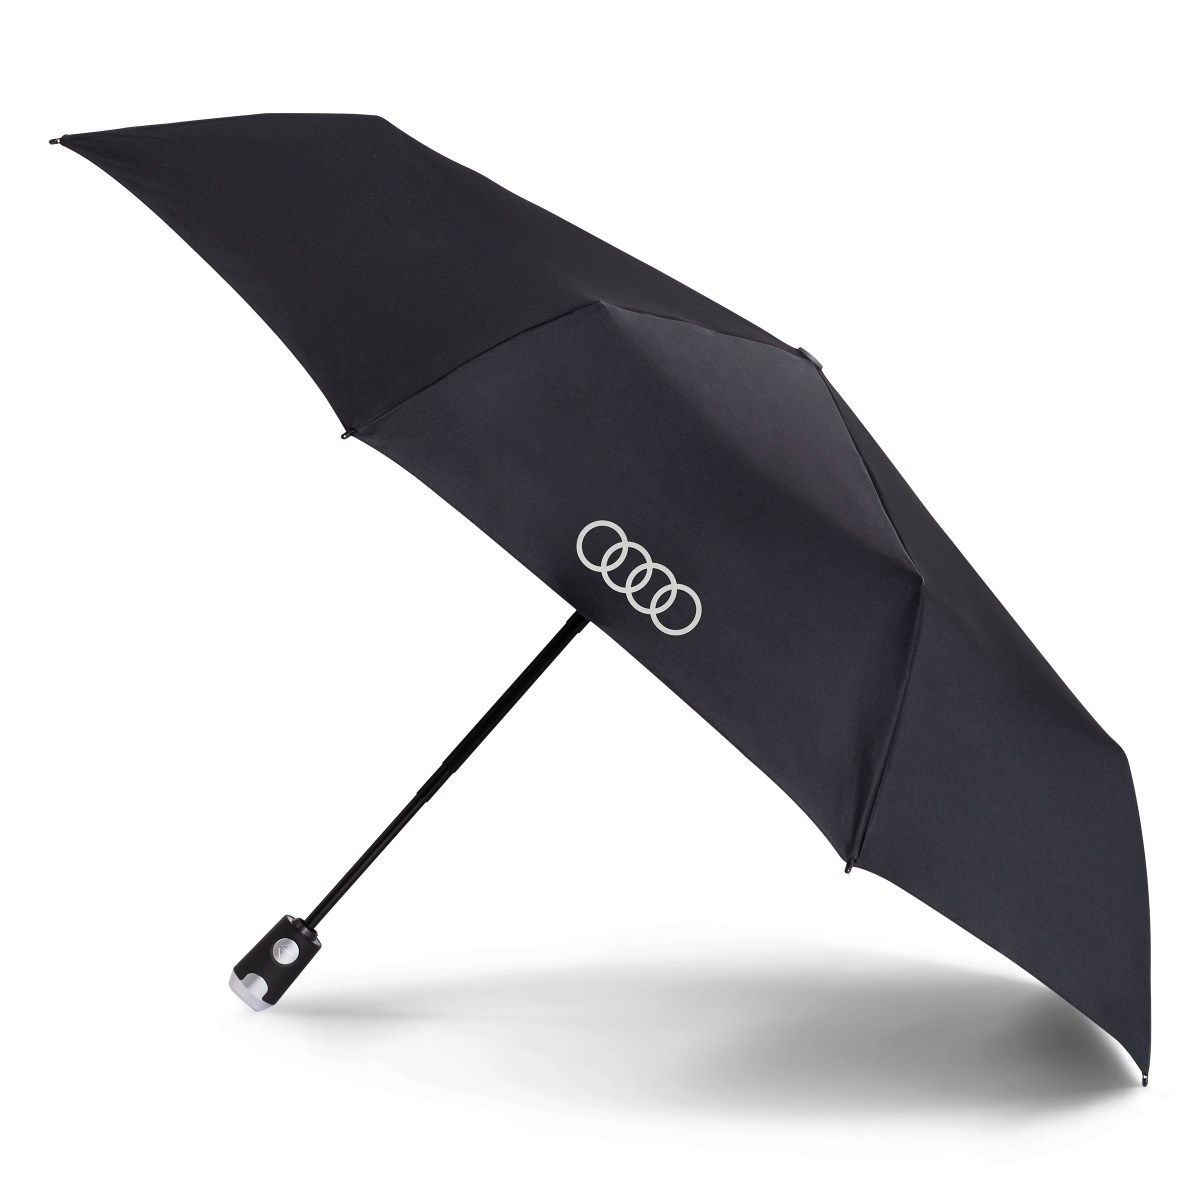 4s original für Audi regenschirm kugelsichere sicherheit regen high